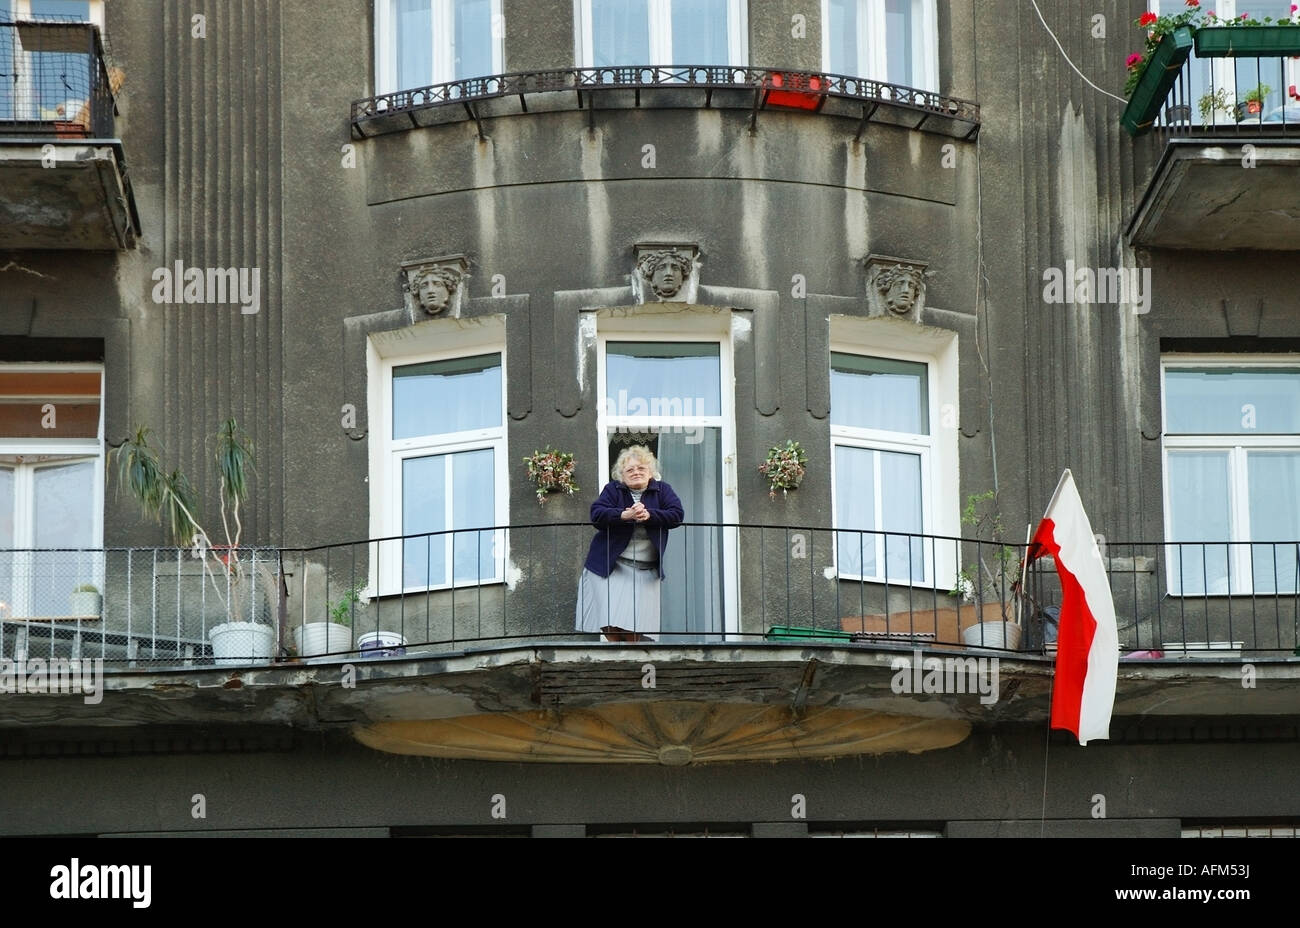 Dame de race blanche, vieille femme, debout sur le balcon, Praga Polnoc, Varsovie, Warszawa, Pologne, Polska, l'Europe, l'UNION EUROPÉENNE Banque D'Images